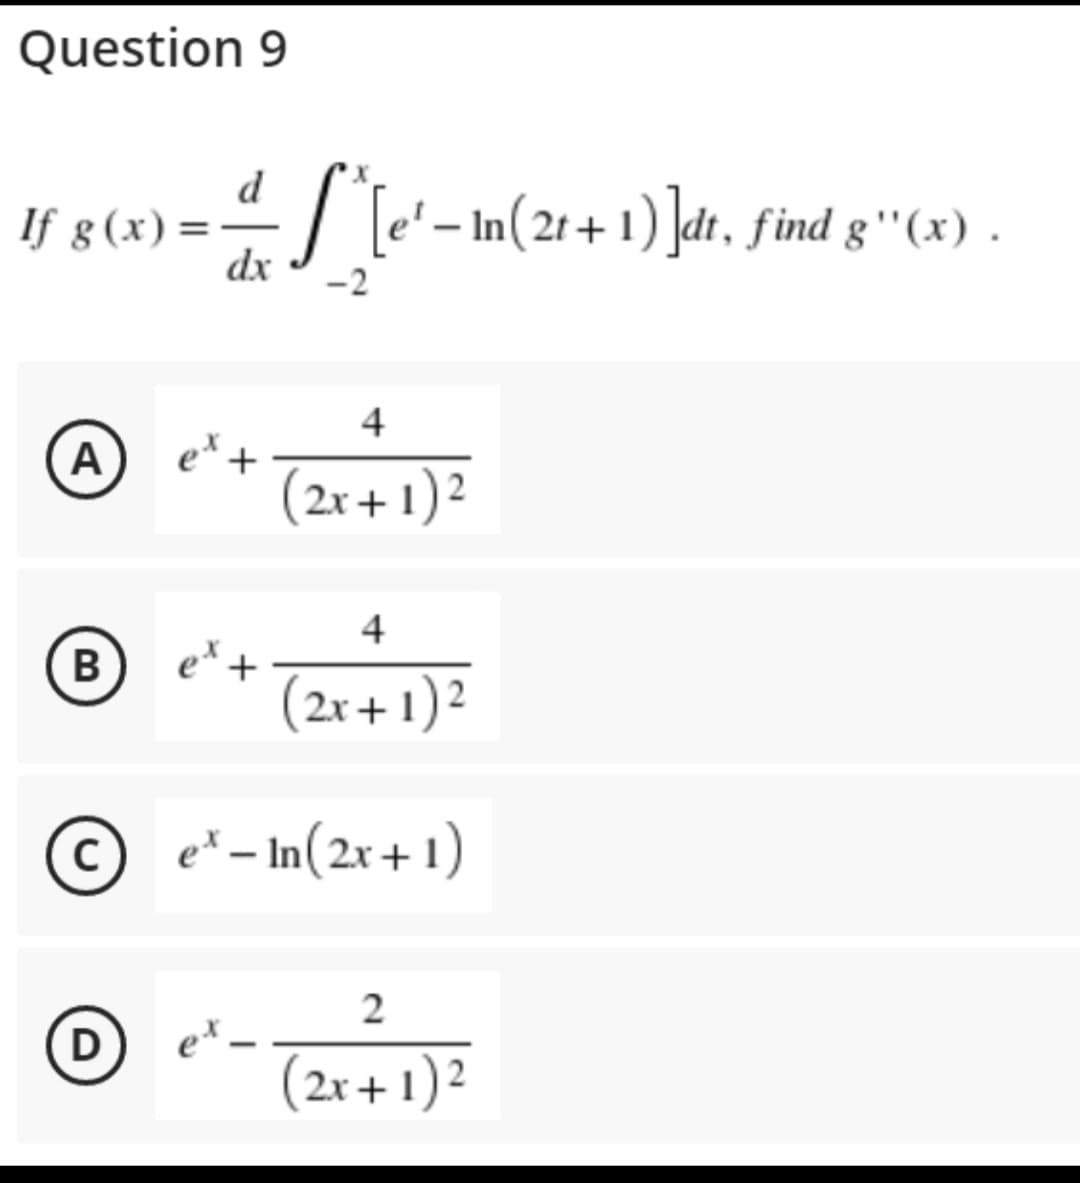 Question 9
d
If g(x) = ·S*^[e'− In(2t+1)]dt, find g''(x) .
dx
-2
4
A
(2x + 1)²
4
B
'+
(2x + 1)²
Ⓒe-In(2x+1)
2
D
et.
(2x + 1)²
et +